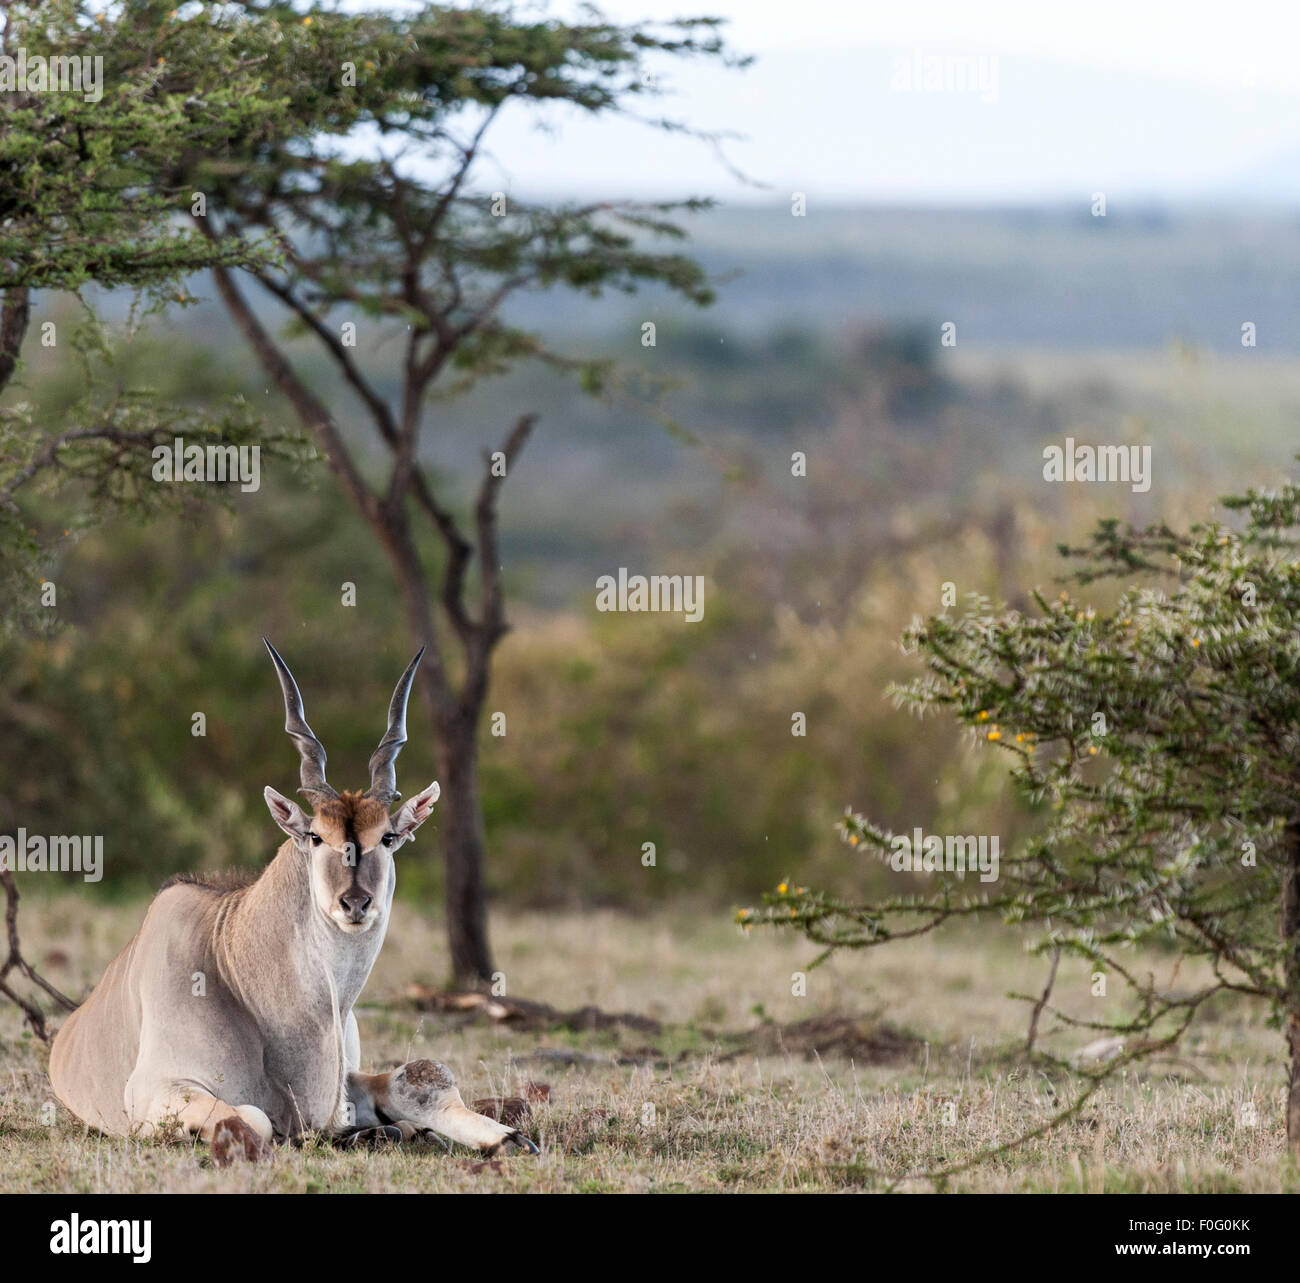 Gemeinsame Eland auf dem Boden sitzend Mara Naboisho Conservancy Kenia Afrika Stockfoto